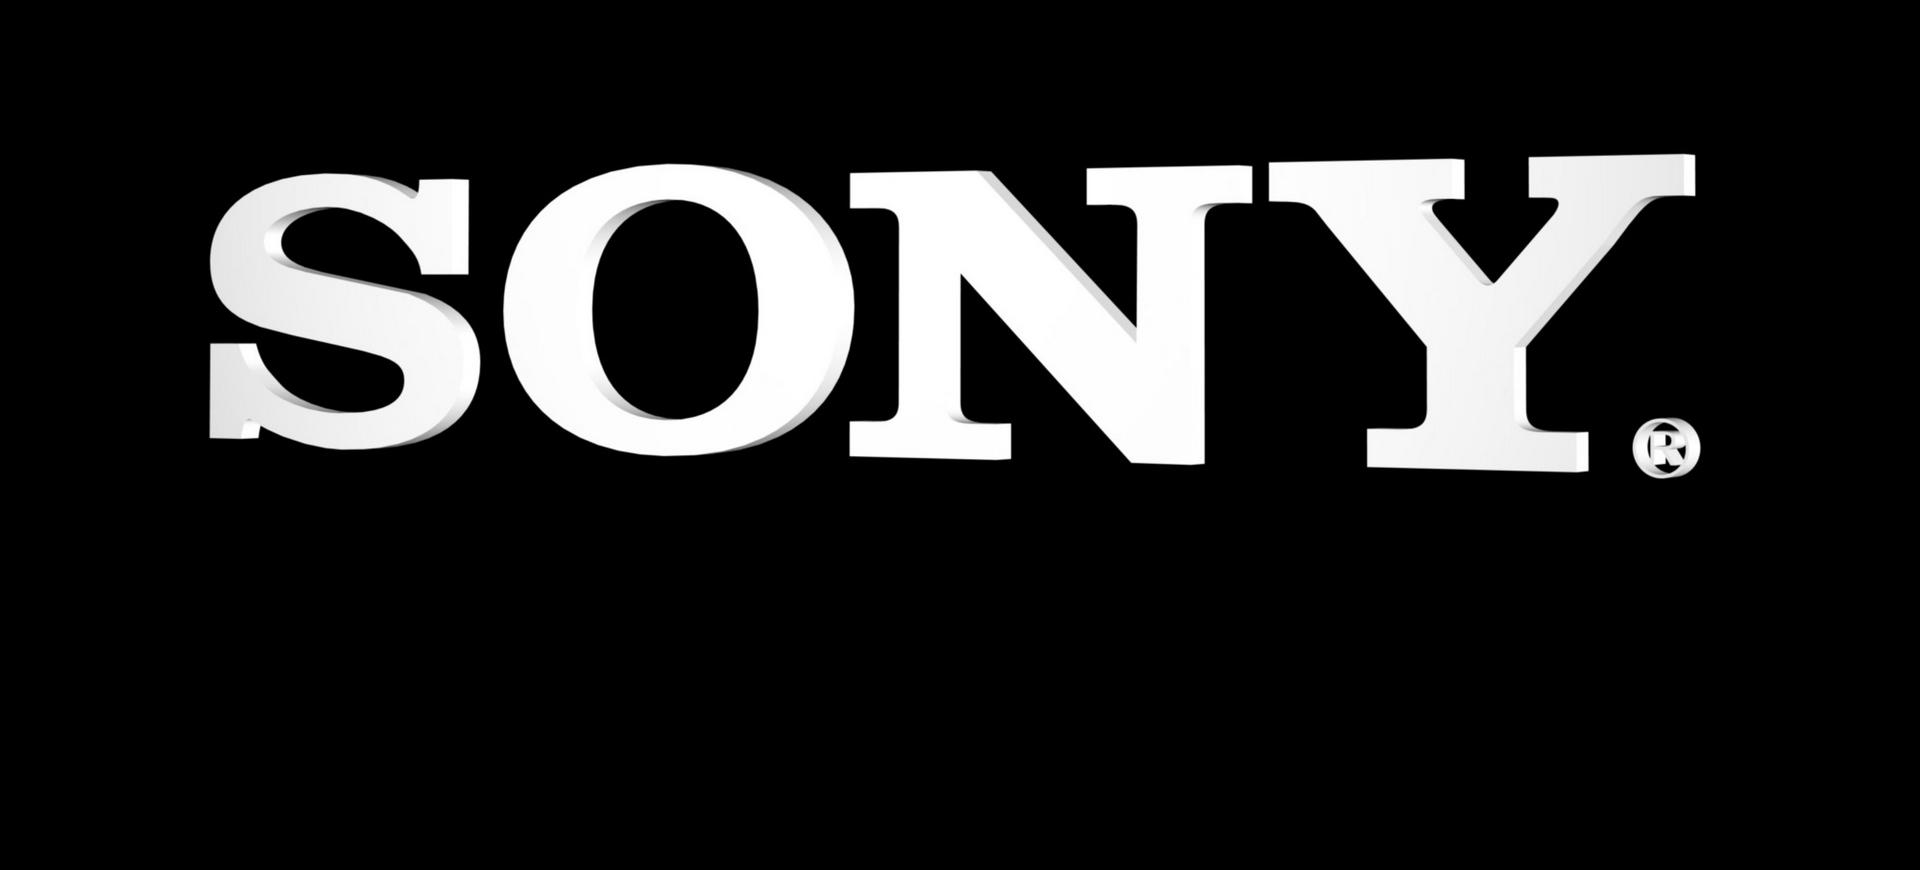 Sony thành lập công ty chuyên phát triển game iOS và Android - Tin Game Mobile